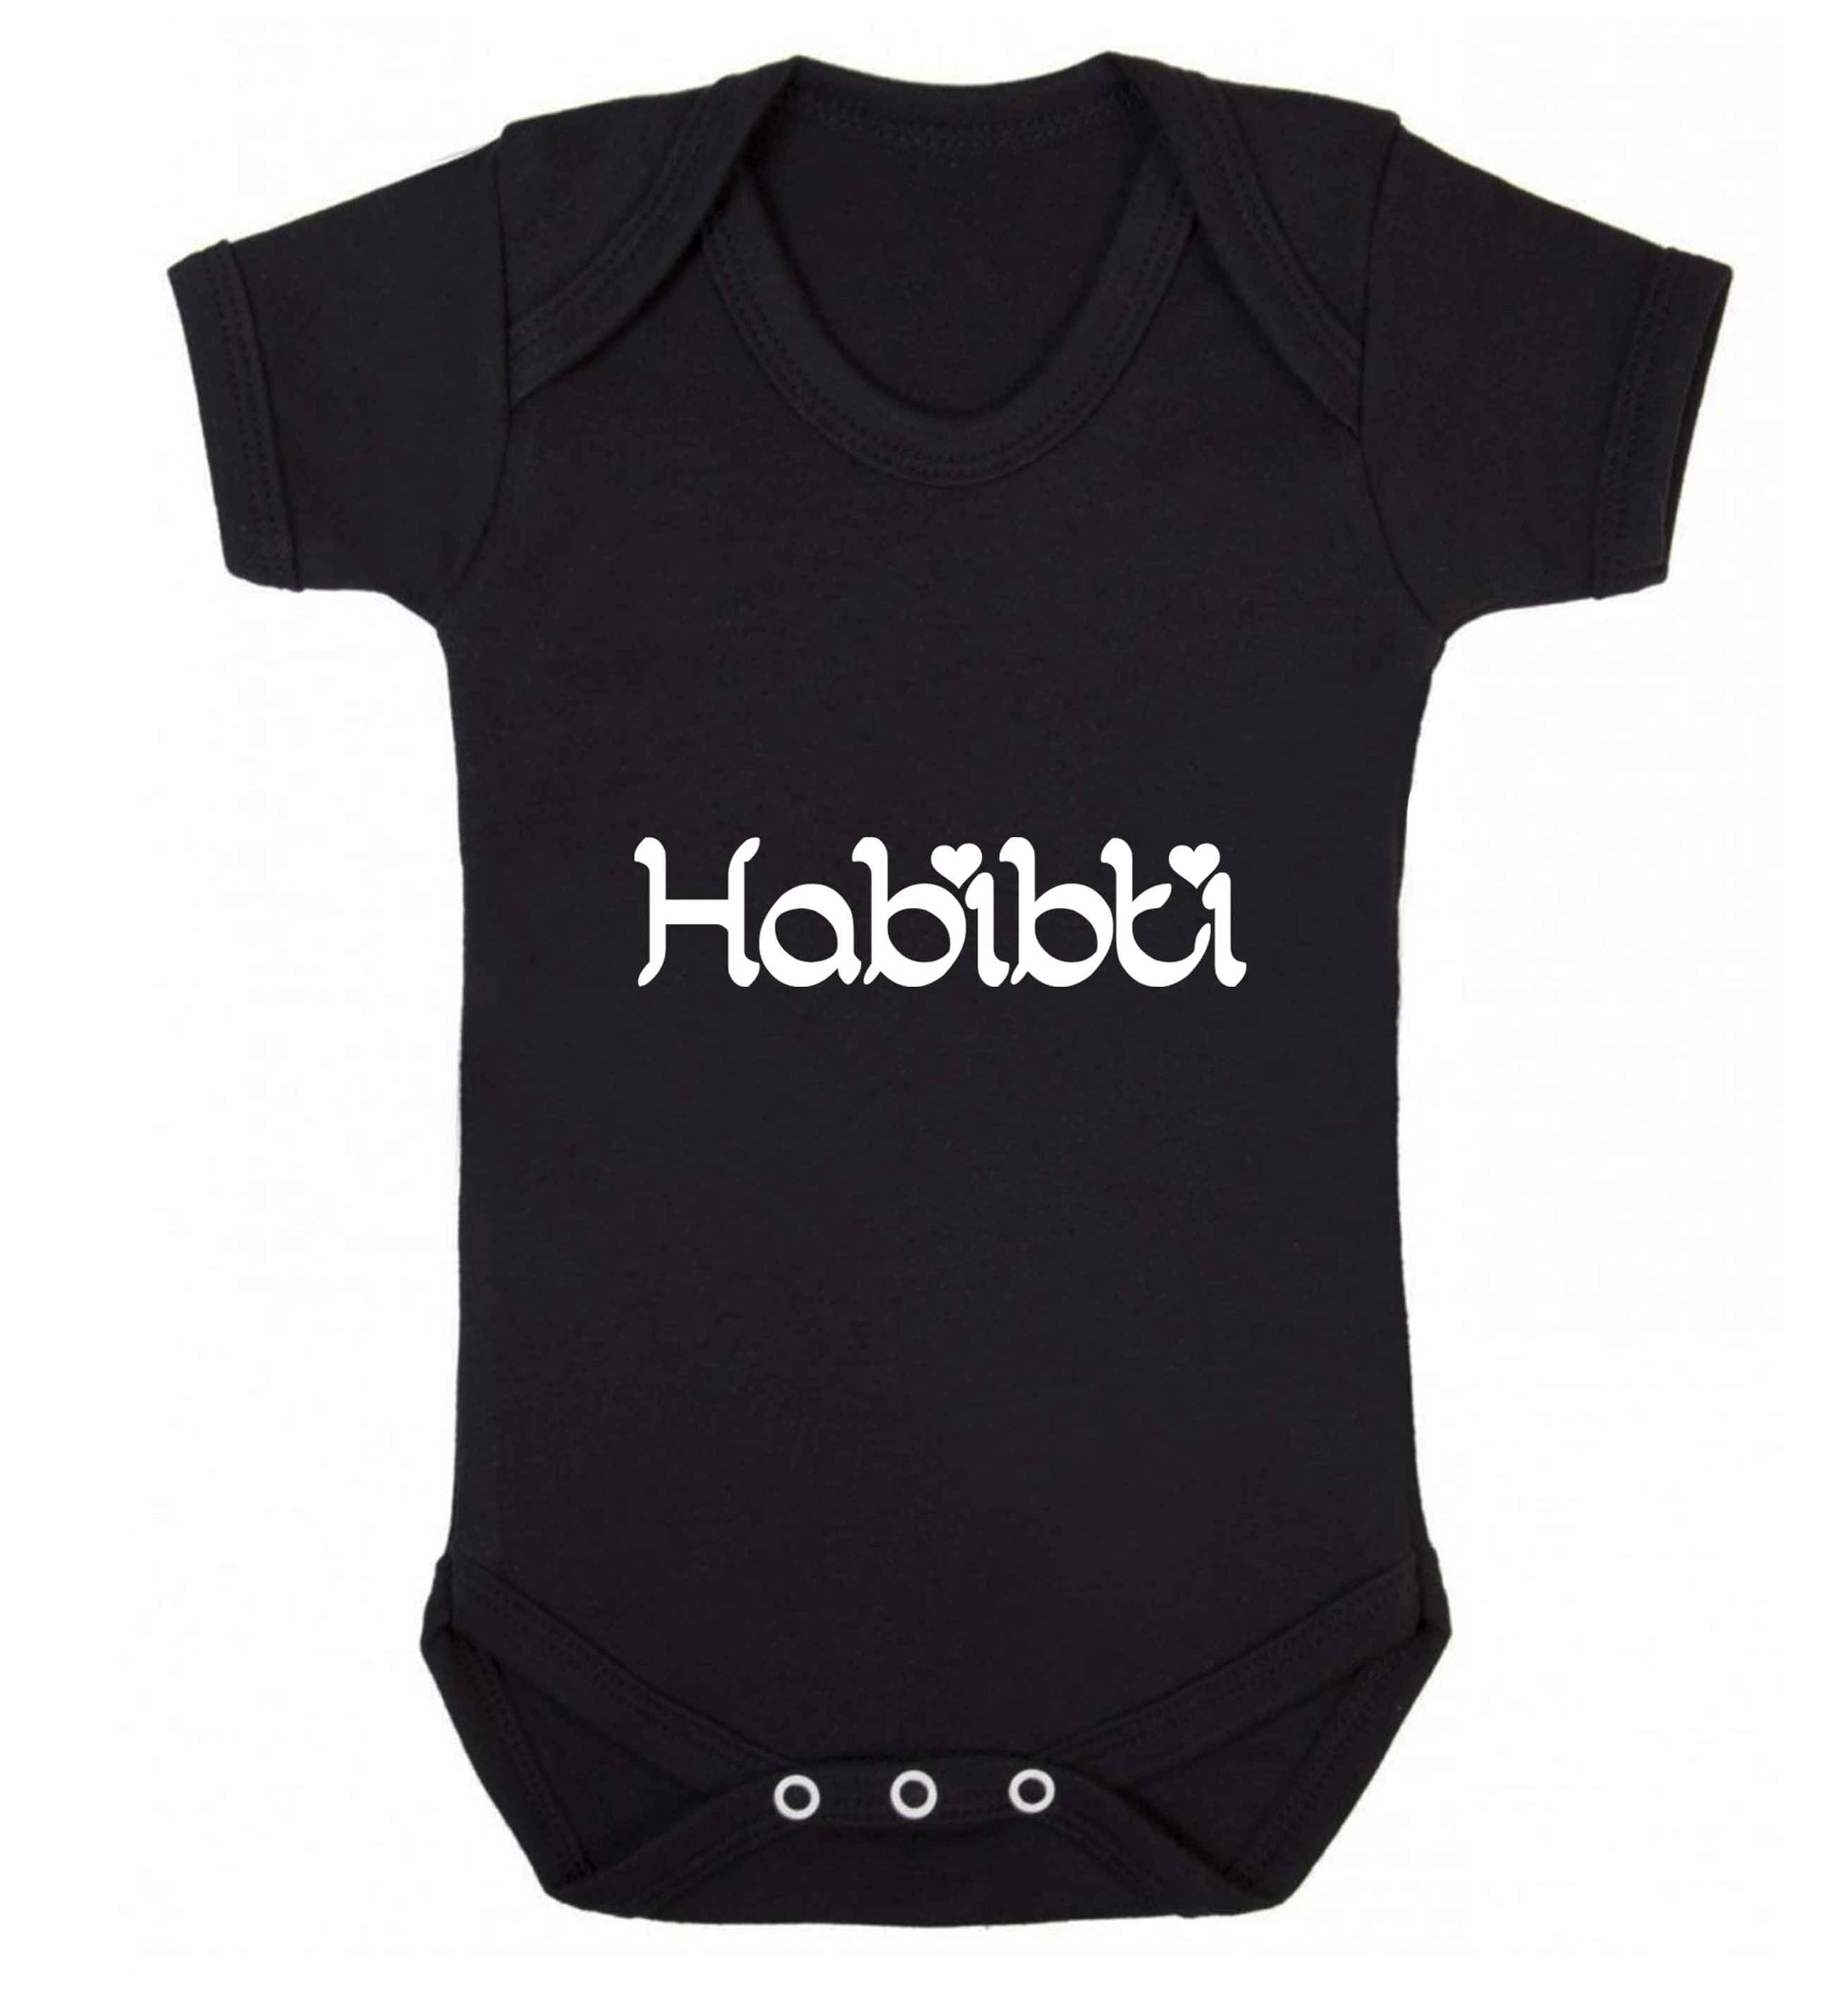 Habibiti baby vest black 18-24 months